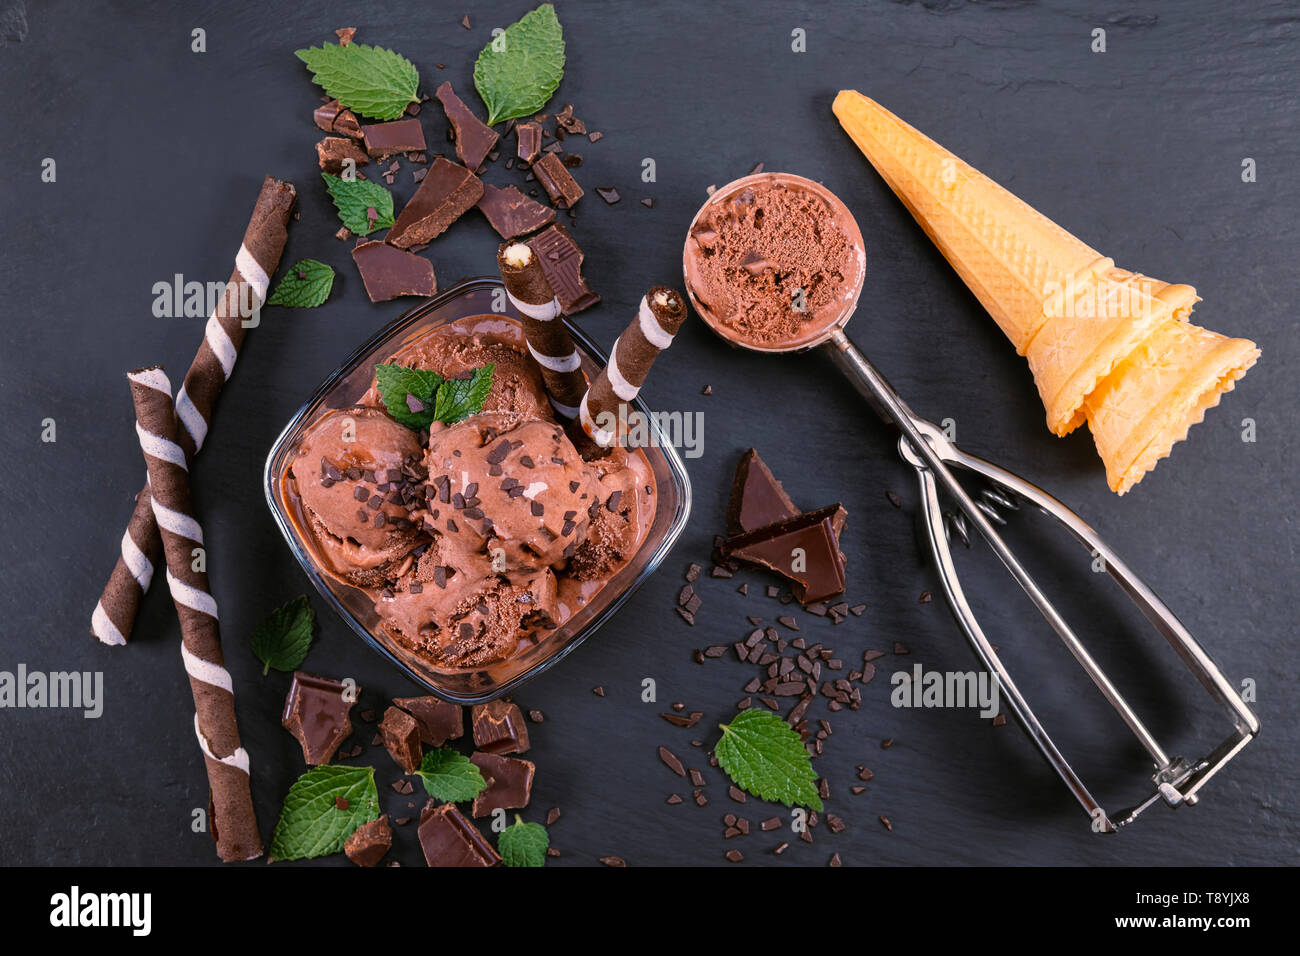 Palline di gelato al cioccolato in recipiente di vetro con bastoncini di wafer, il cono e il cioccolato su un nero ardesia bordo. Focus sulla ciotola con palline di gelato al cioccolato Foto Stock